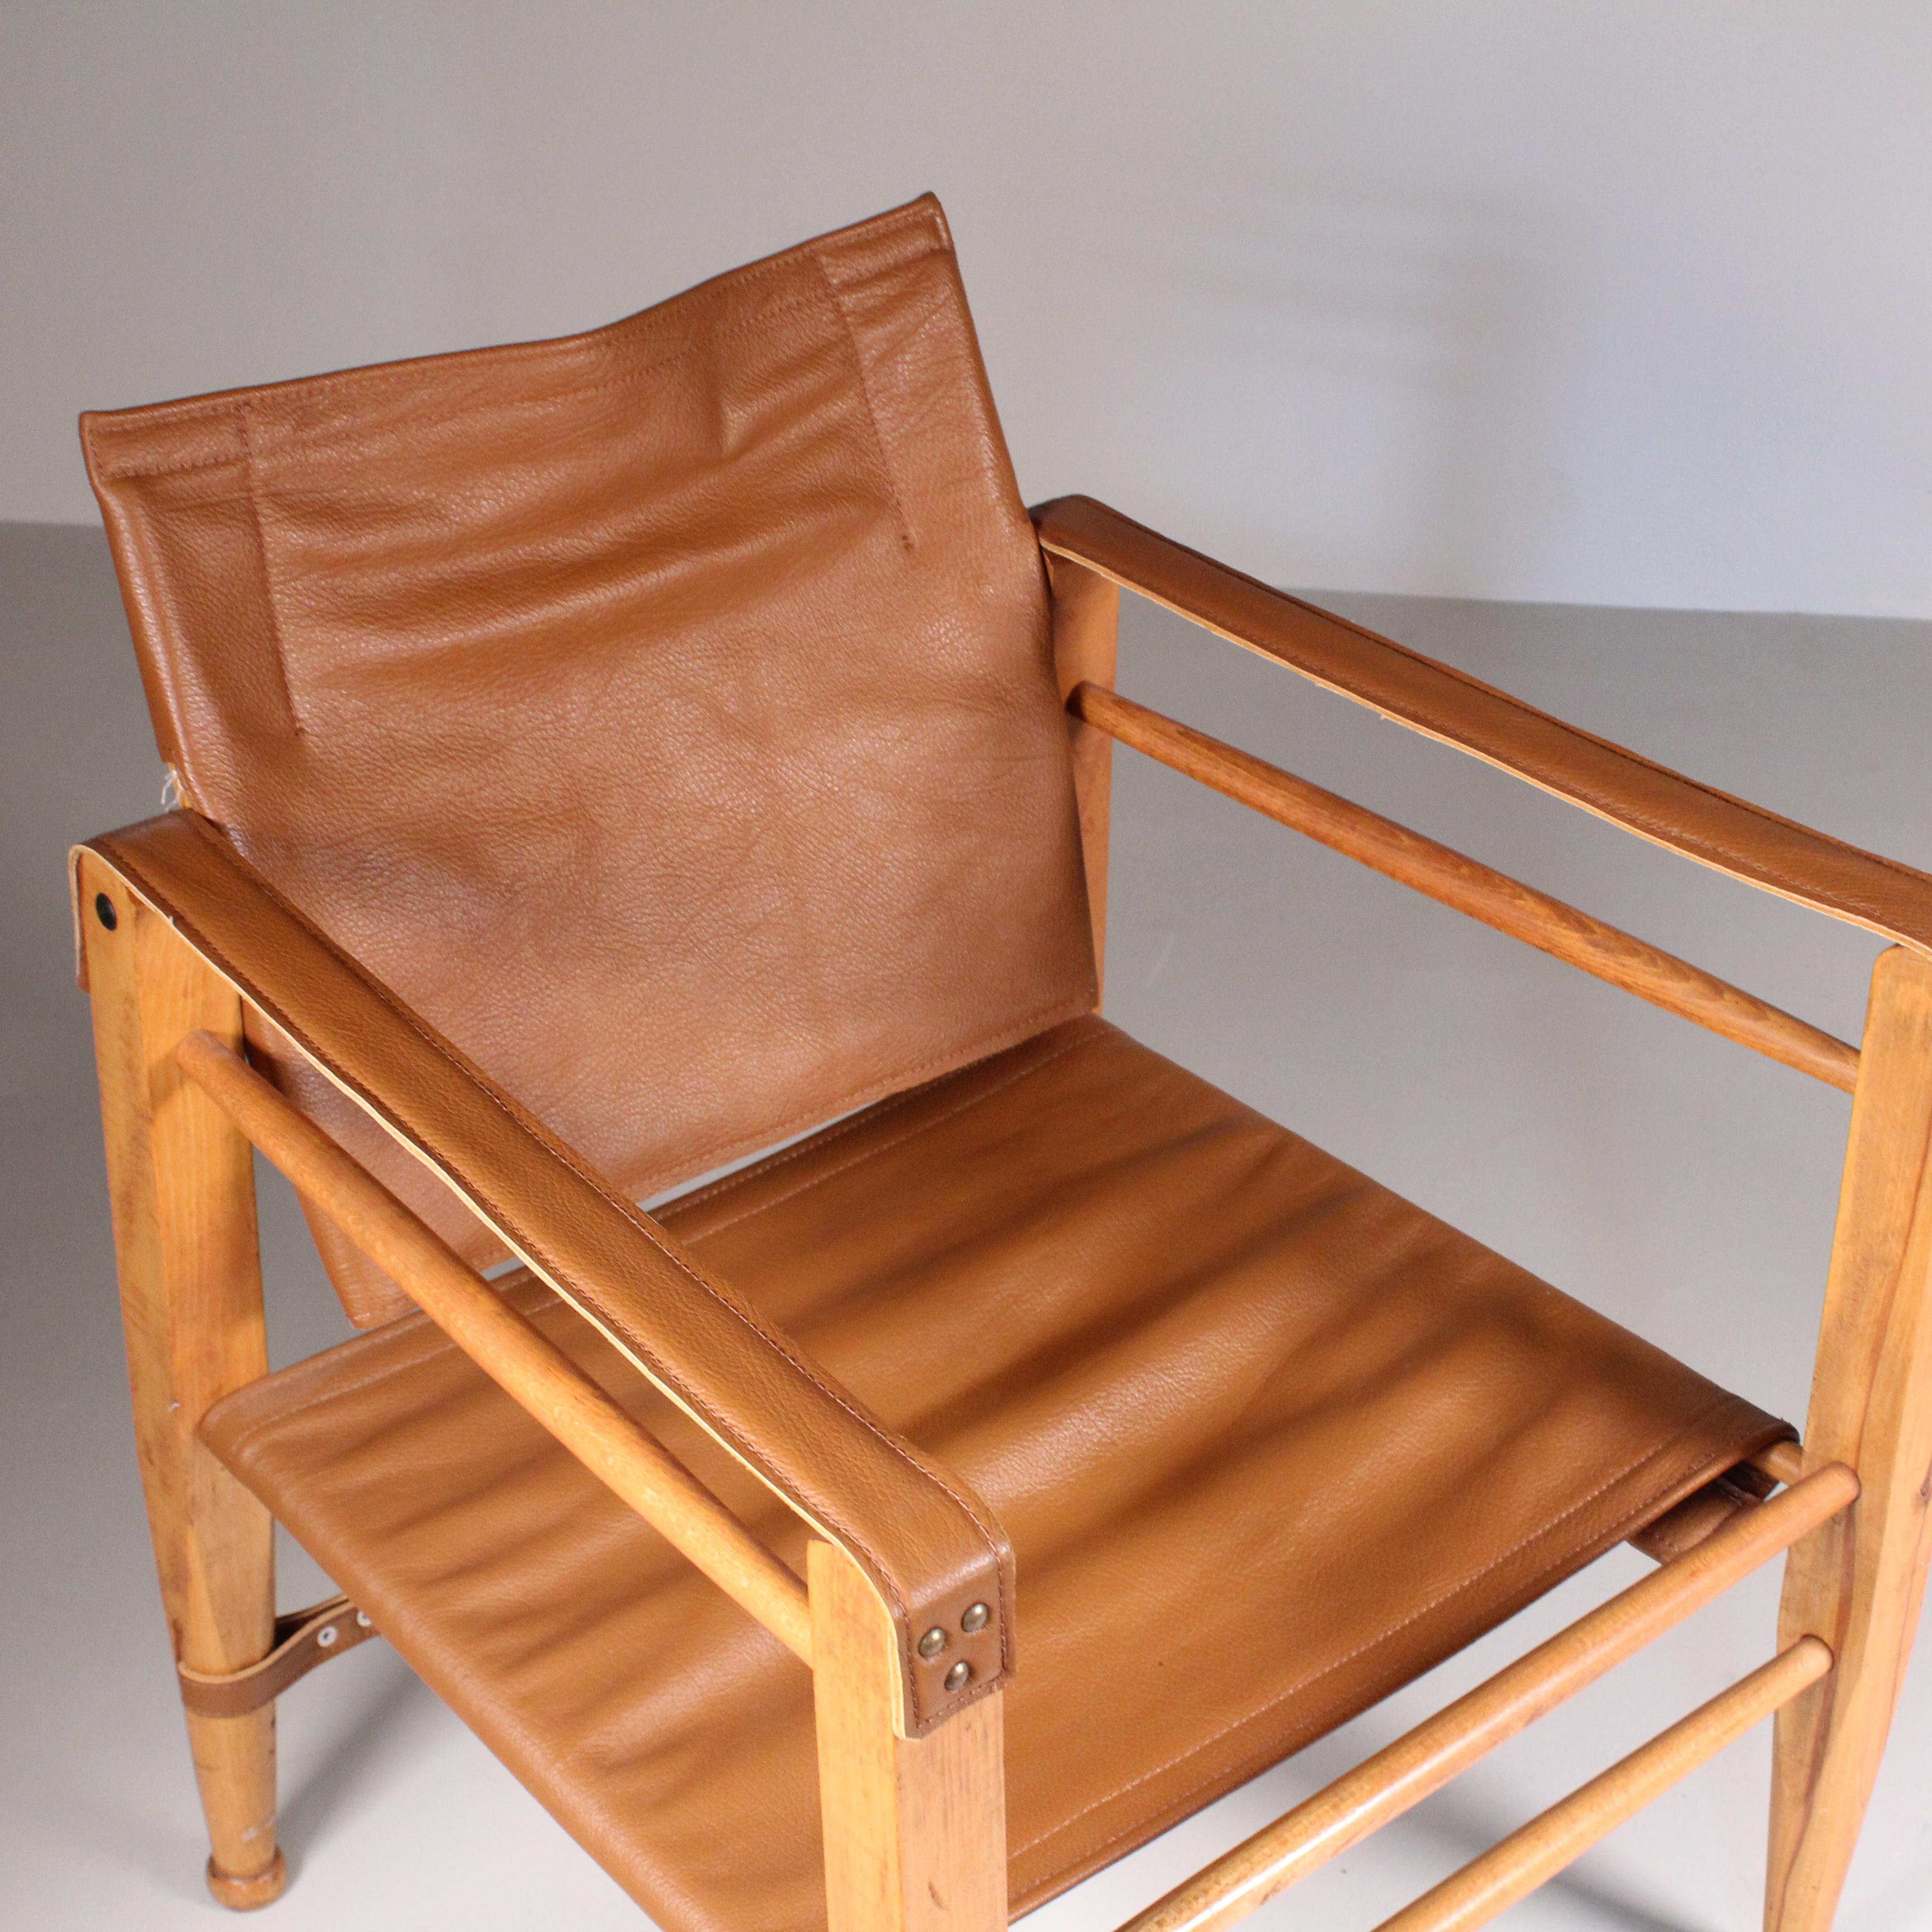 Der Ledersessel Safari von Fritz Hansen aus den 1960er Jahren ist eine Ikone des modernen dänischen Designs. Der elegante Holzrahmen dieses Stuhls ist mit feinem Leder gepolstert und verleiht dem Gesamtdesign einen Hauch von Luxus und Komfort. Der